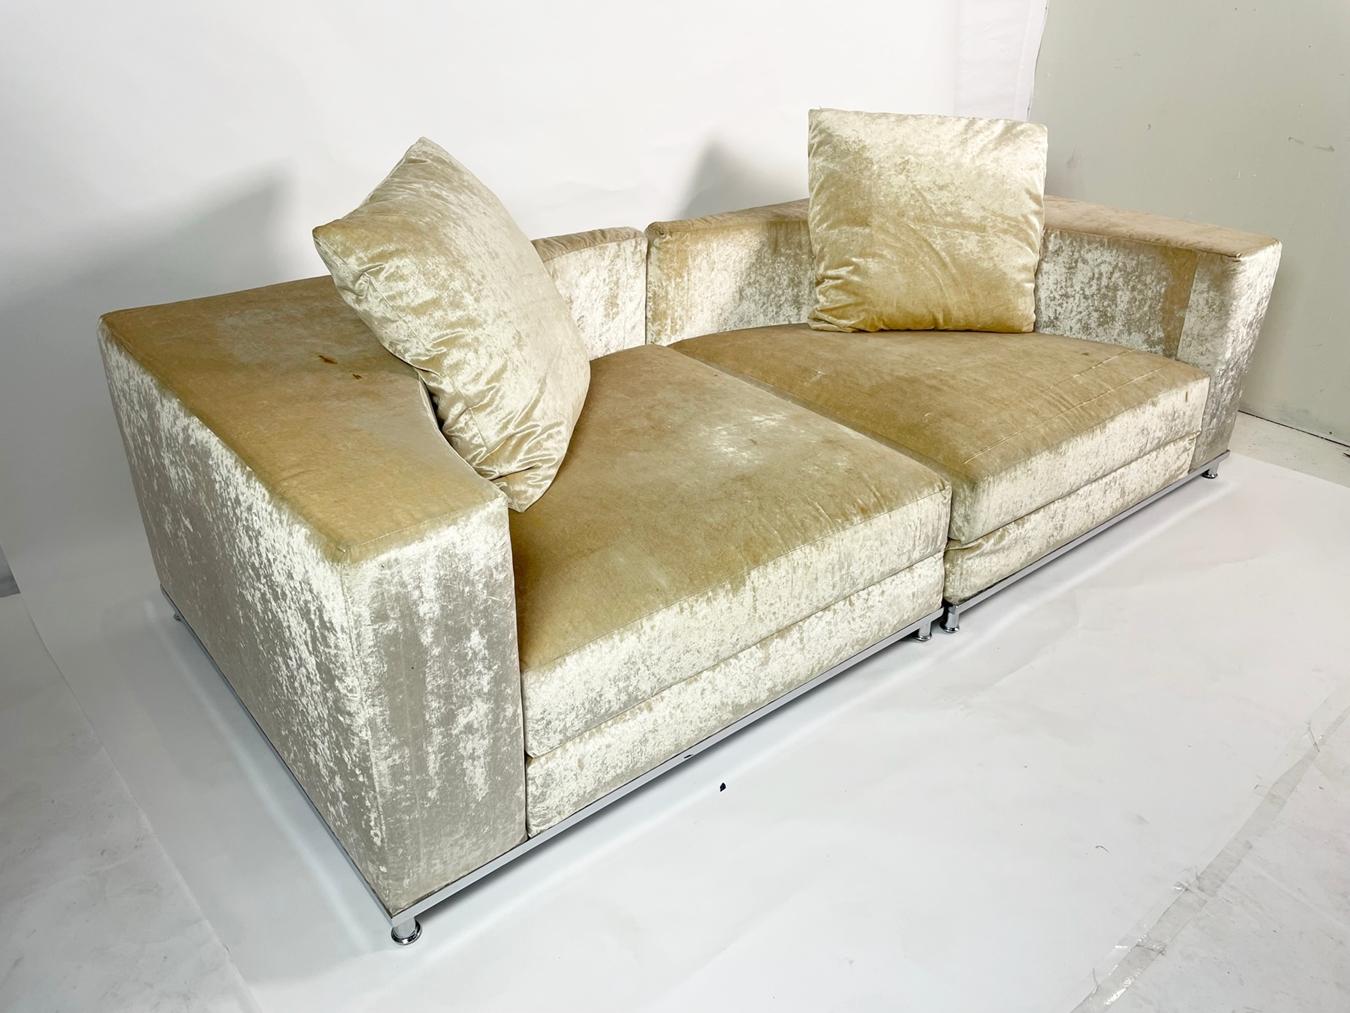 Canapé sectionnel 2 pièces conçu et fabriqué en Italie par Saba Italia.

Le canapé a une base chromée avec des coussins amovibles et il est livré avec 2 oreillers, une version très moderne et cool des sièges sectionnels.

Le canapé n'est plus en